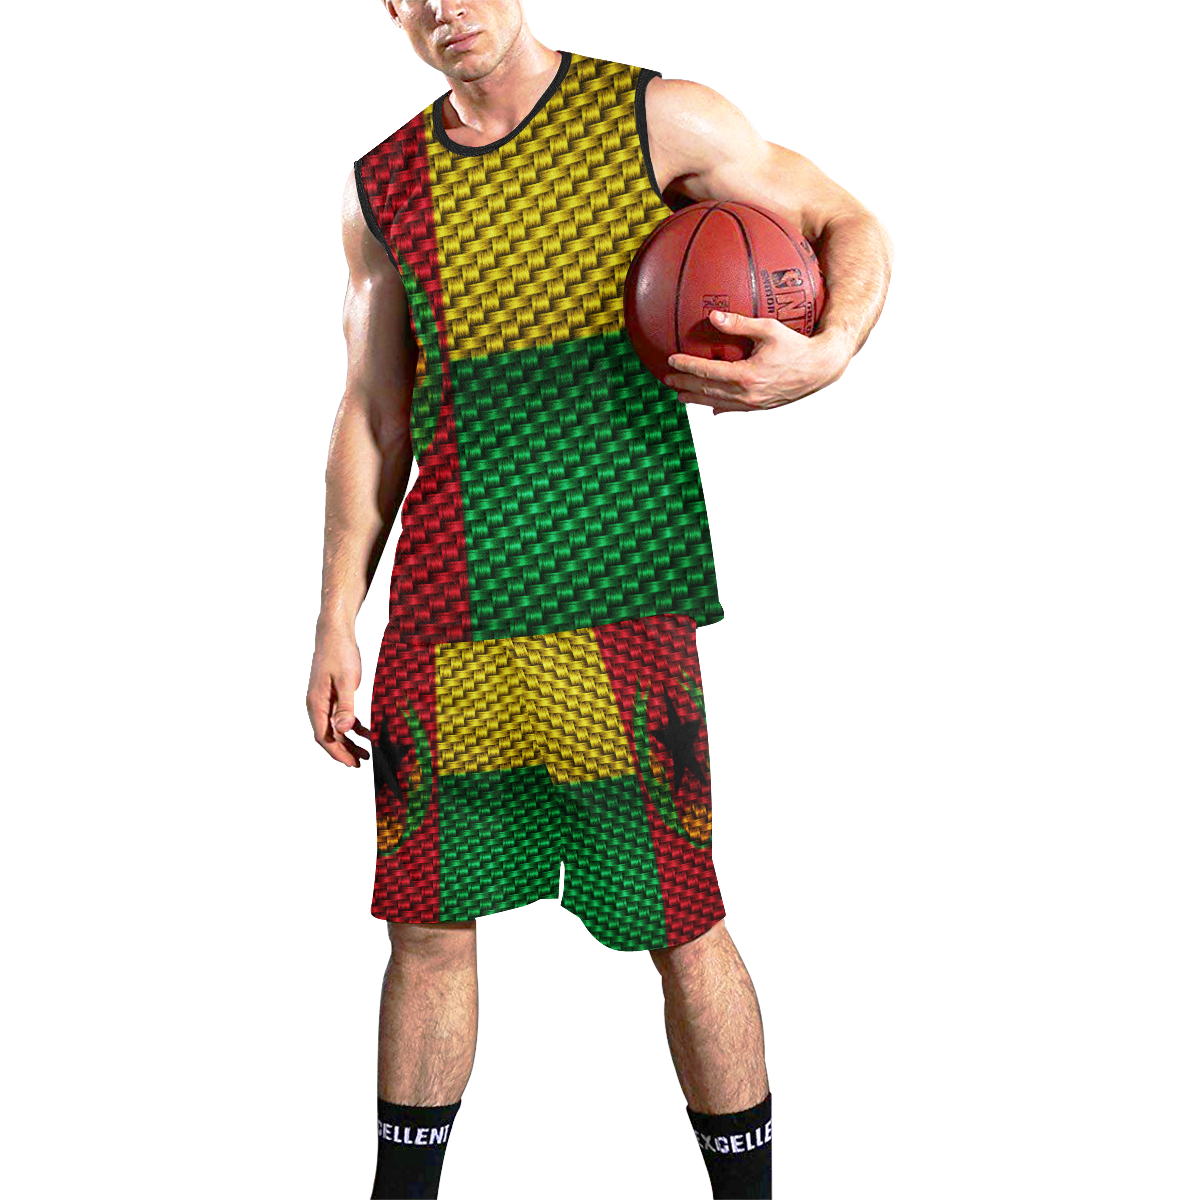 CAP VERT All Over Print Basketball Uniform